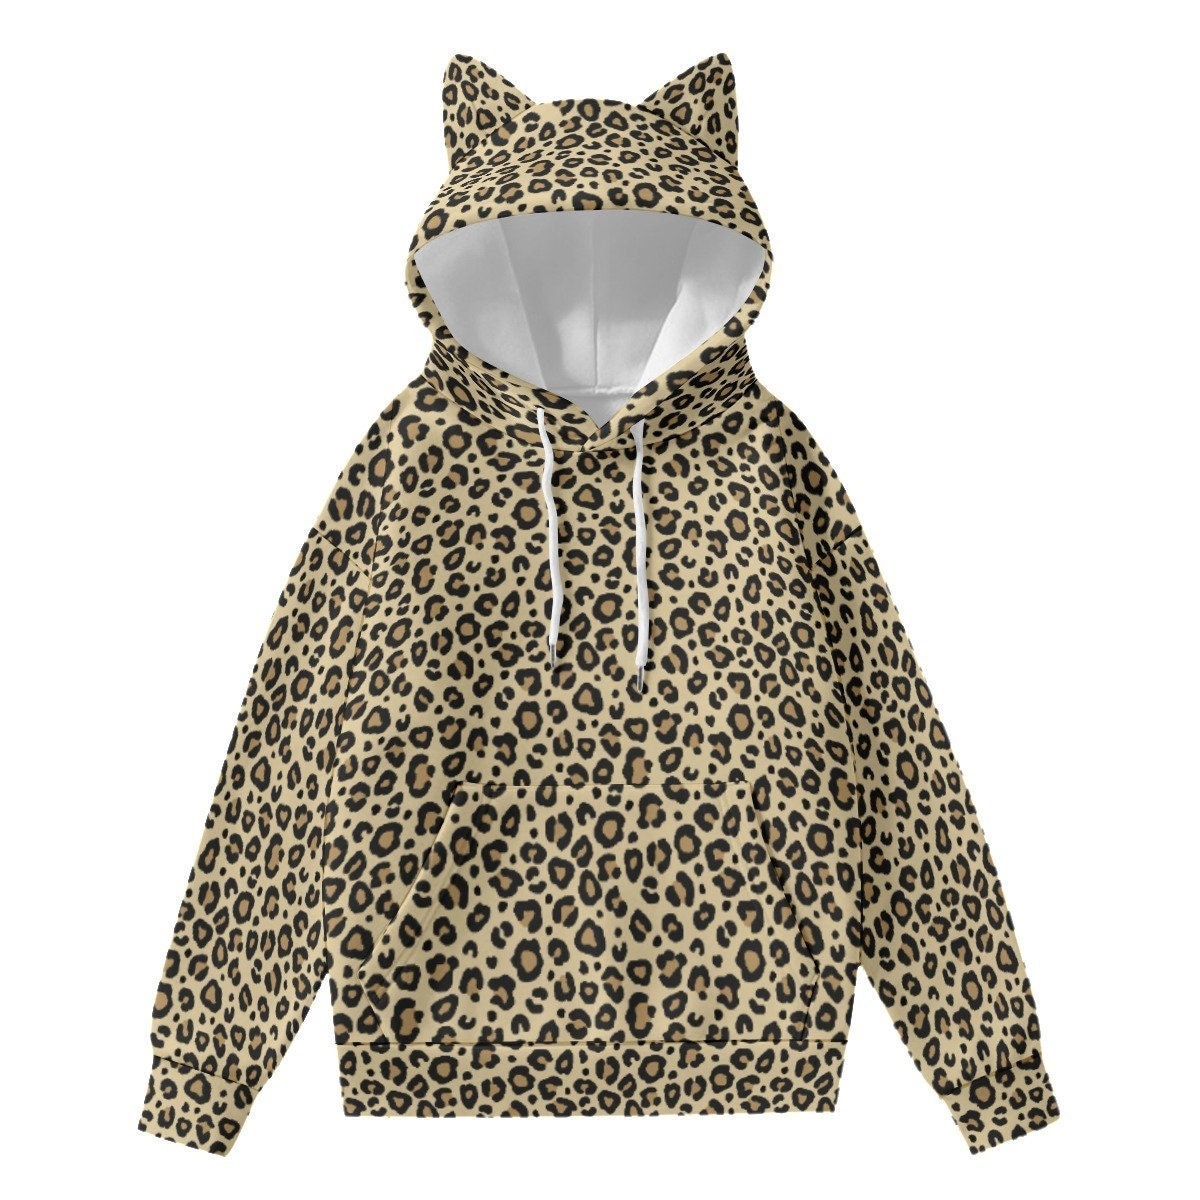 Zamtapary Women Casual Winter Leopard Print Hooded Zipper Solid Jacket Outercoat Sweatshirt 